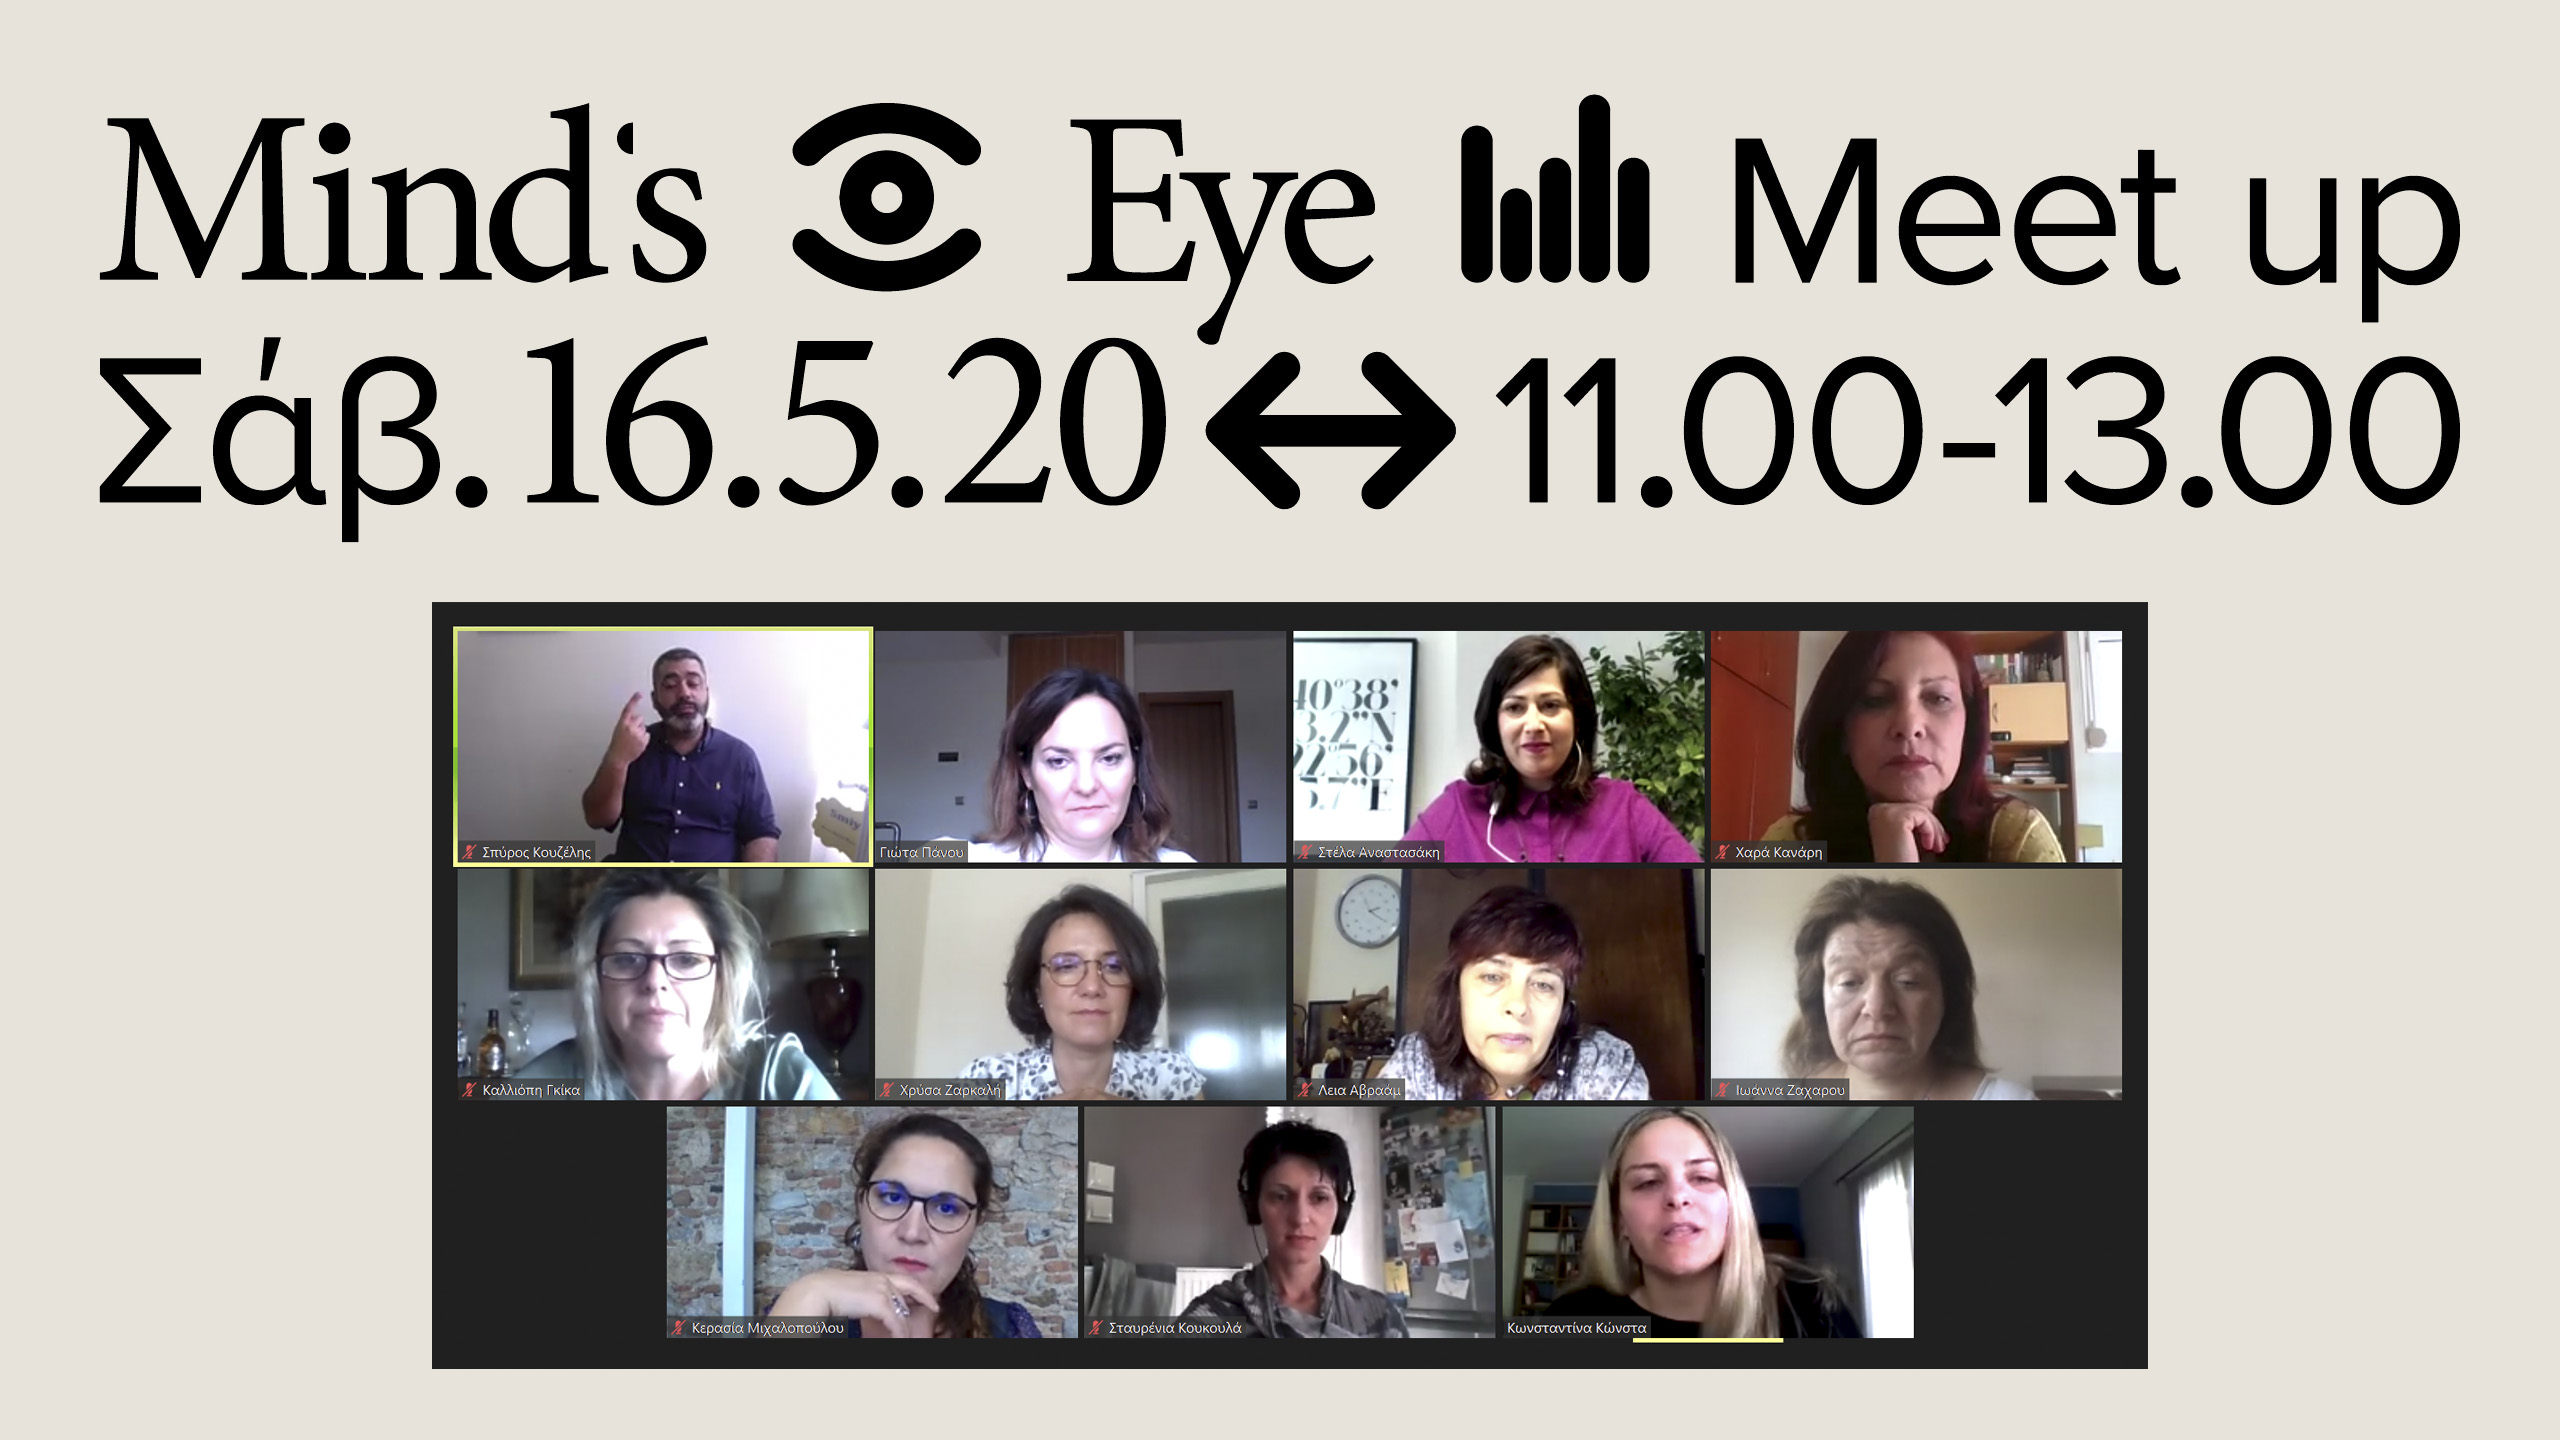 Διαδικτυακή Συνάντηση Διαλόγου Mind's Eye Meet-Up που πραγματοποιήθηκε το Σάββατο 16 Μαΐου 2020 μέσω της διαδικτυακής πλατφόρμας του zoom. Εικόνα που εμφανίζει σε παράθυρα όλες τις ομιλήτριες της ημερίδας, ξεκινώντας από πάνω αριστερά εμφανίζονται: Γιώτα Πάνου, Στέλα Αναστασάκη, Χαρά Κανάρη, από κάτω Καλλιόπη Γκίκα, Χρύσα Ζαρκαλή, Λεία Αβραάμ, Ιωάννα Ζαχαρού, και στην τελευταία σειρά Κερασία Μιχαλοπούλου, Σταυρένια Κουκουλά και η Κωνσταντίνα Κώνστα. Πάνω Αριστερά εμφανίζεται το παράθυρο του διερμηνέα της ελληνικής νοηματικής γλώσσας Σπύρο Κουζέλη.